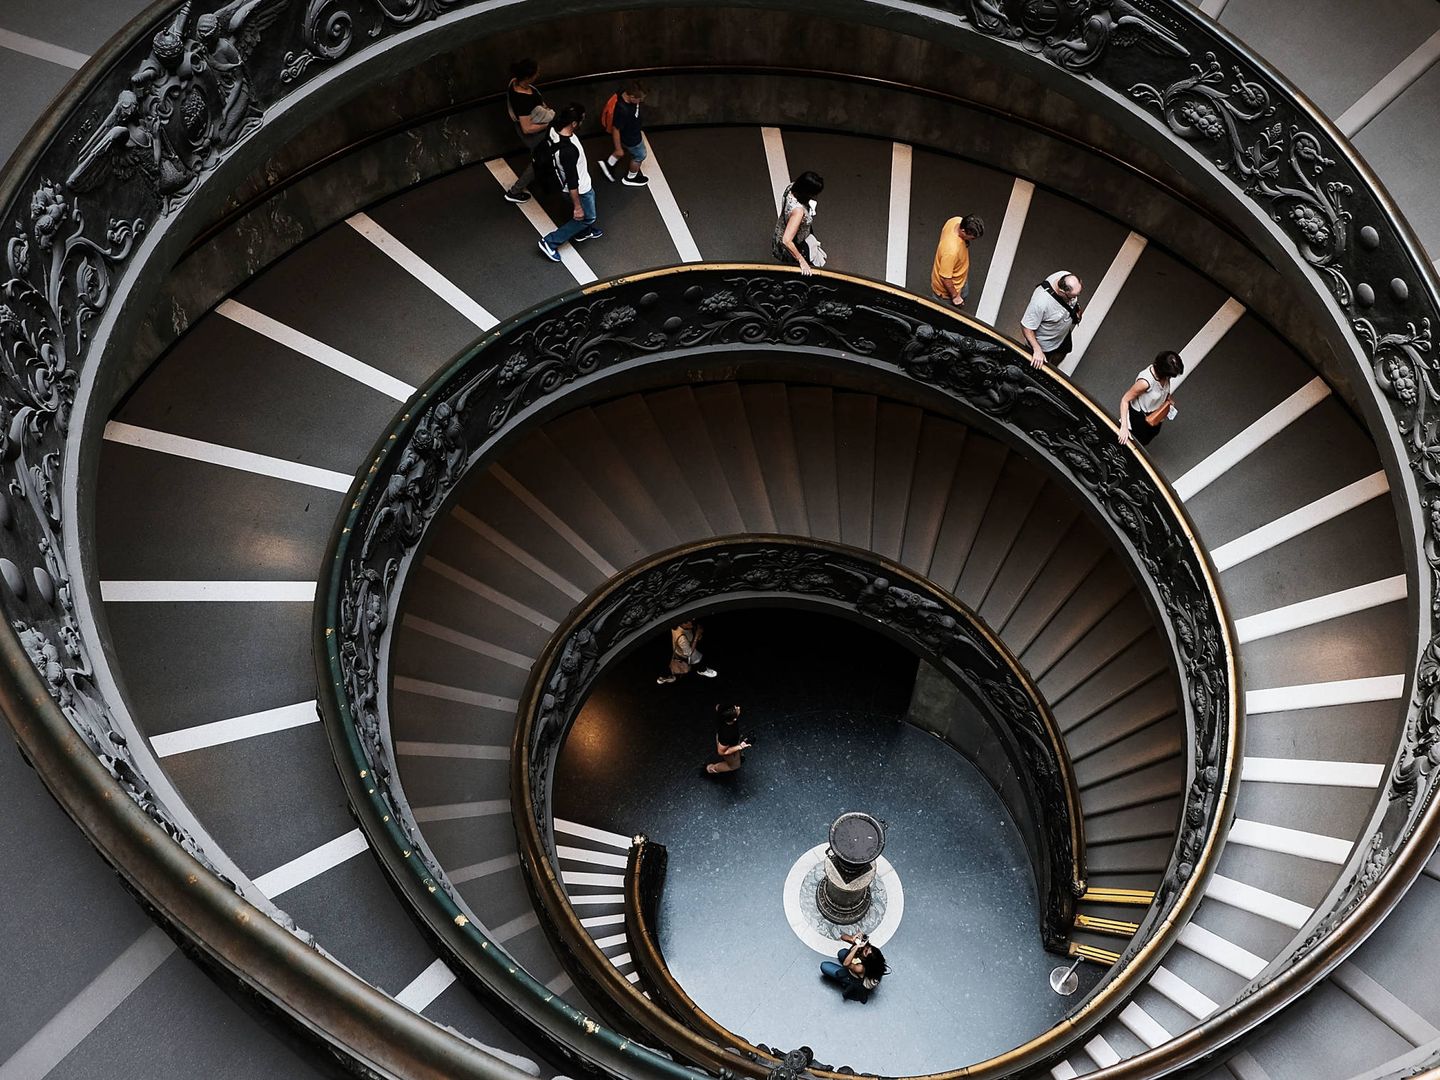 Escalinata de Bramante, Museos Vaticanos (Getty Images)